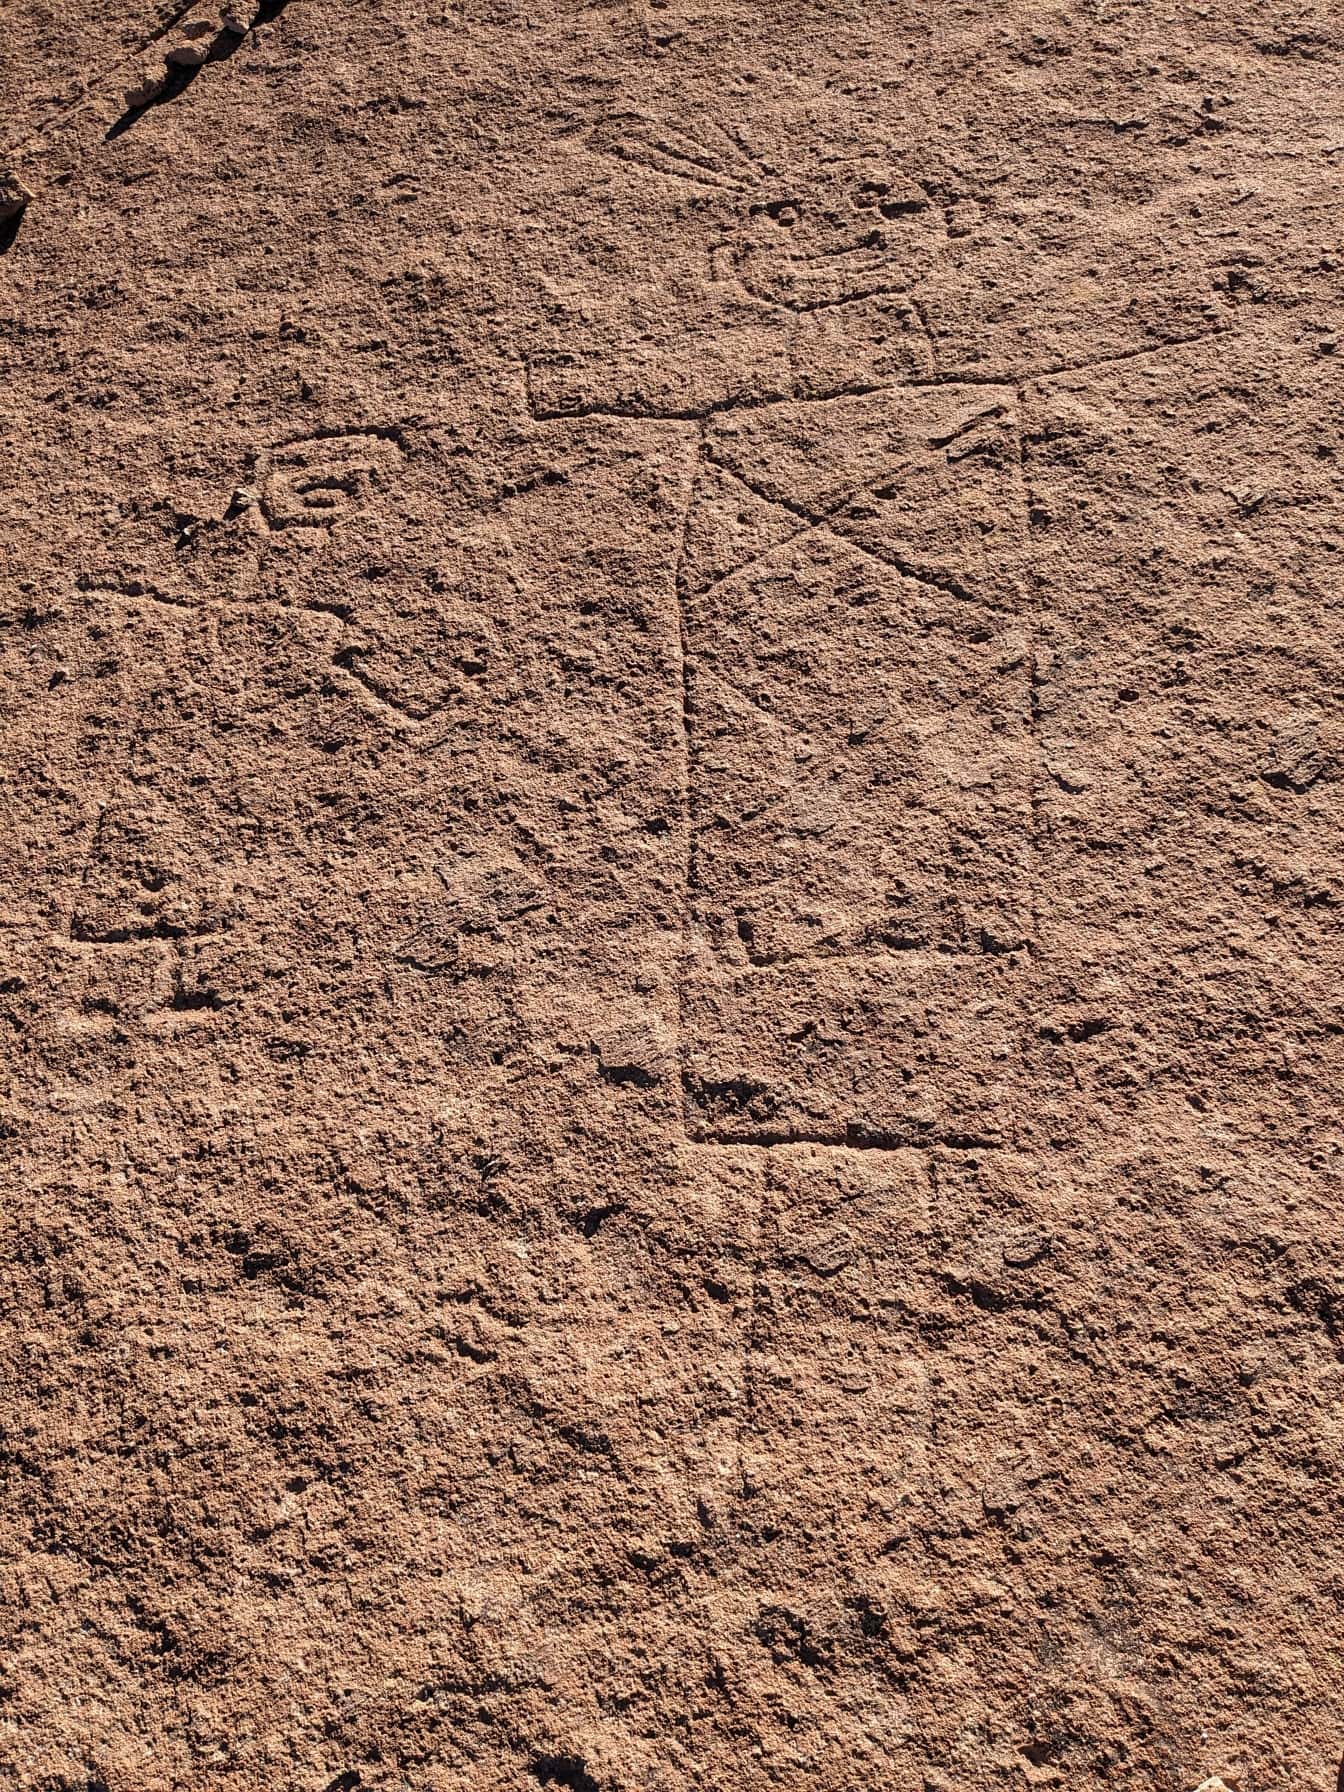 Antiguos grabados rupestres ingenuos, un petroglifo similar a las líneas de Nazca